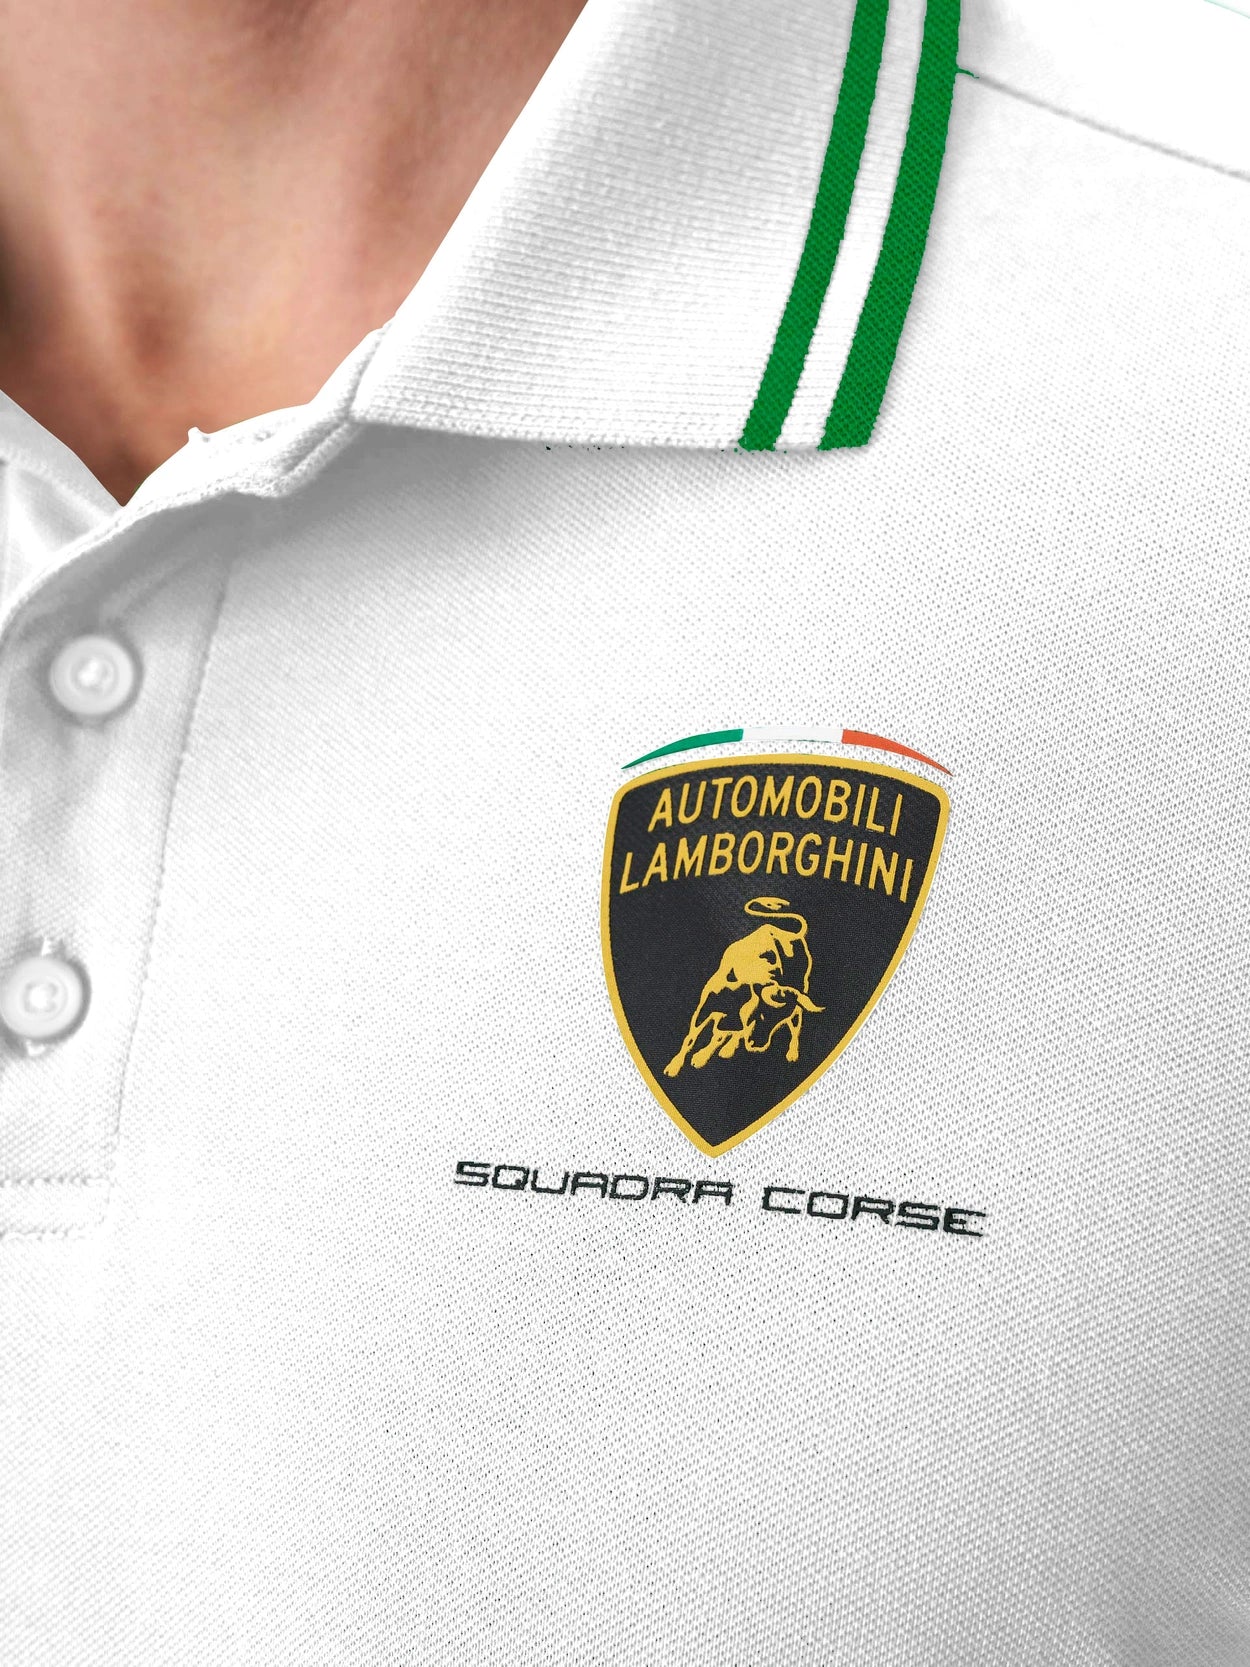 Automobili Lamborghini Squadra Corse Men's Travel Polo - White